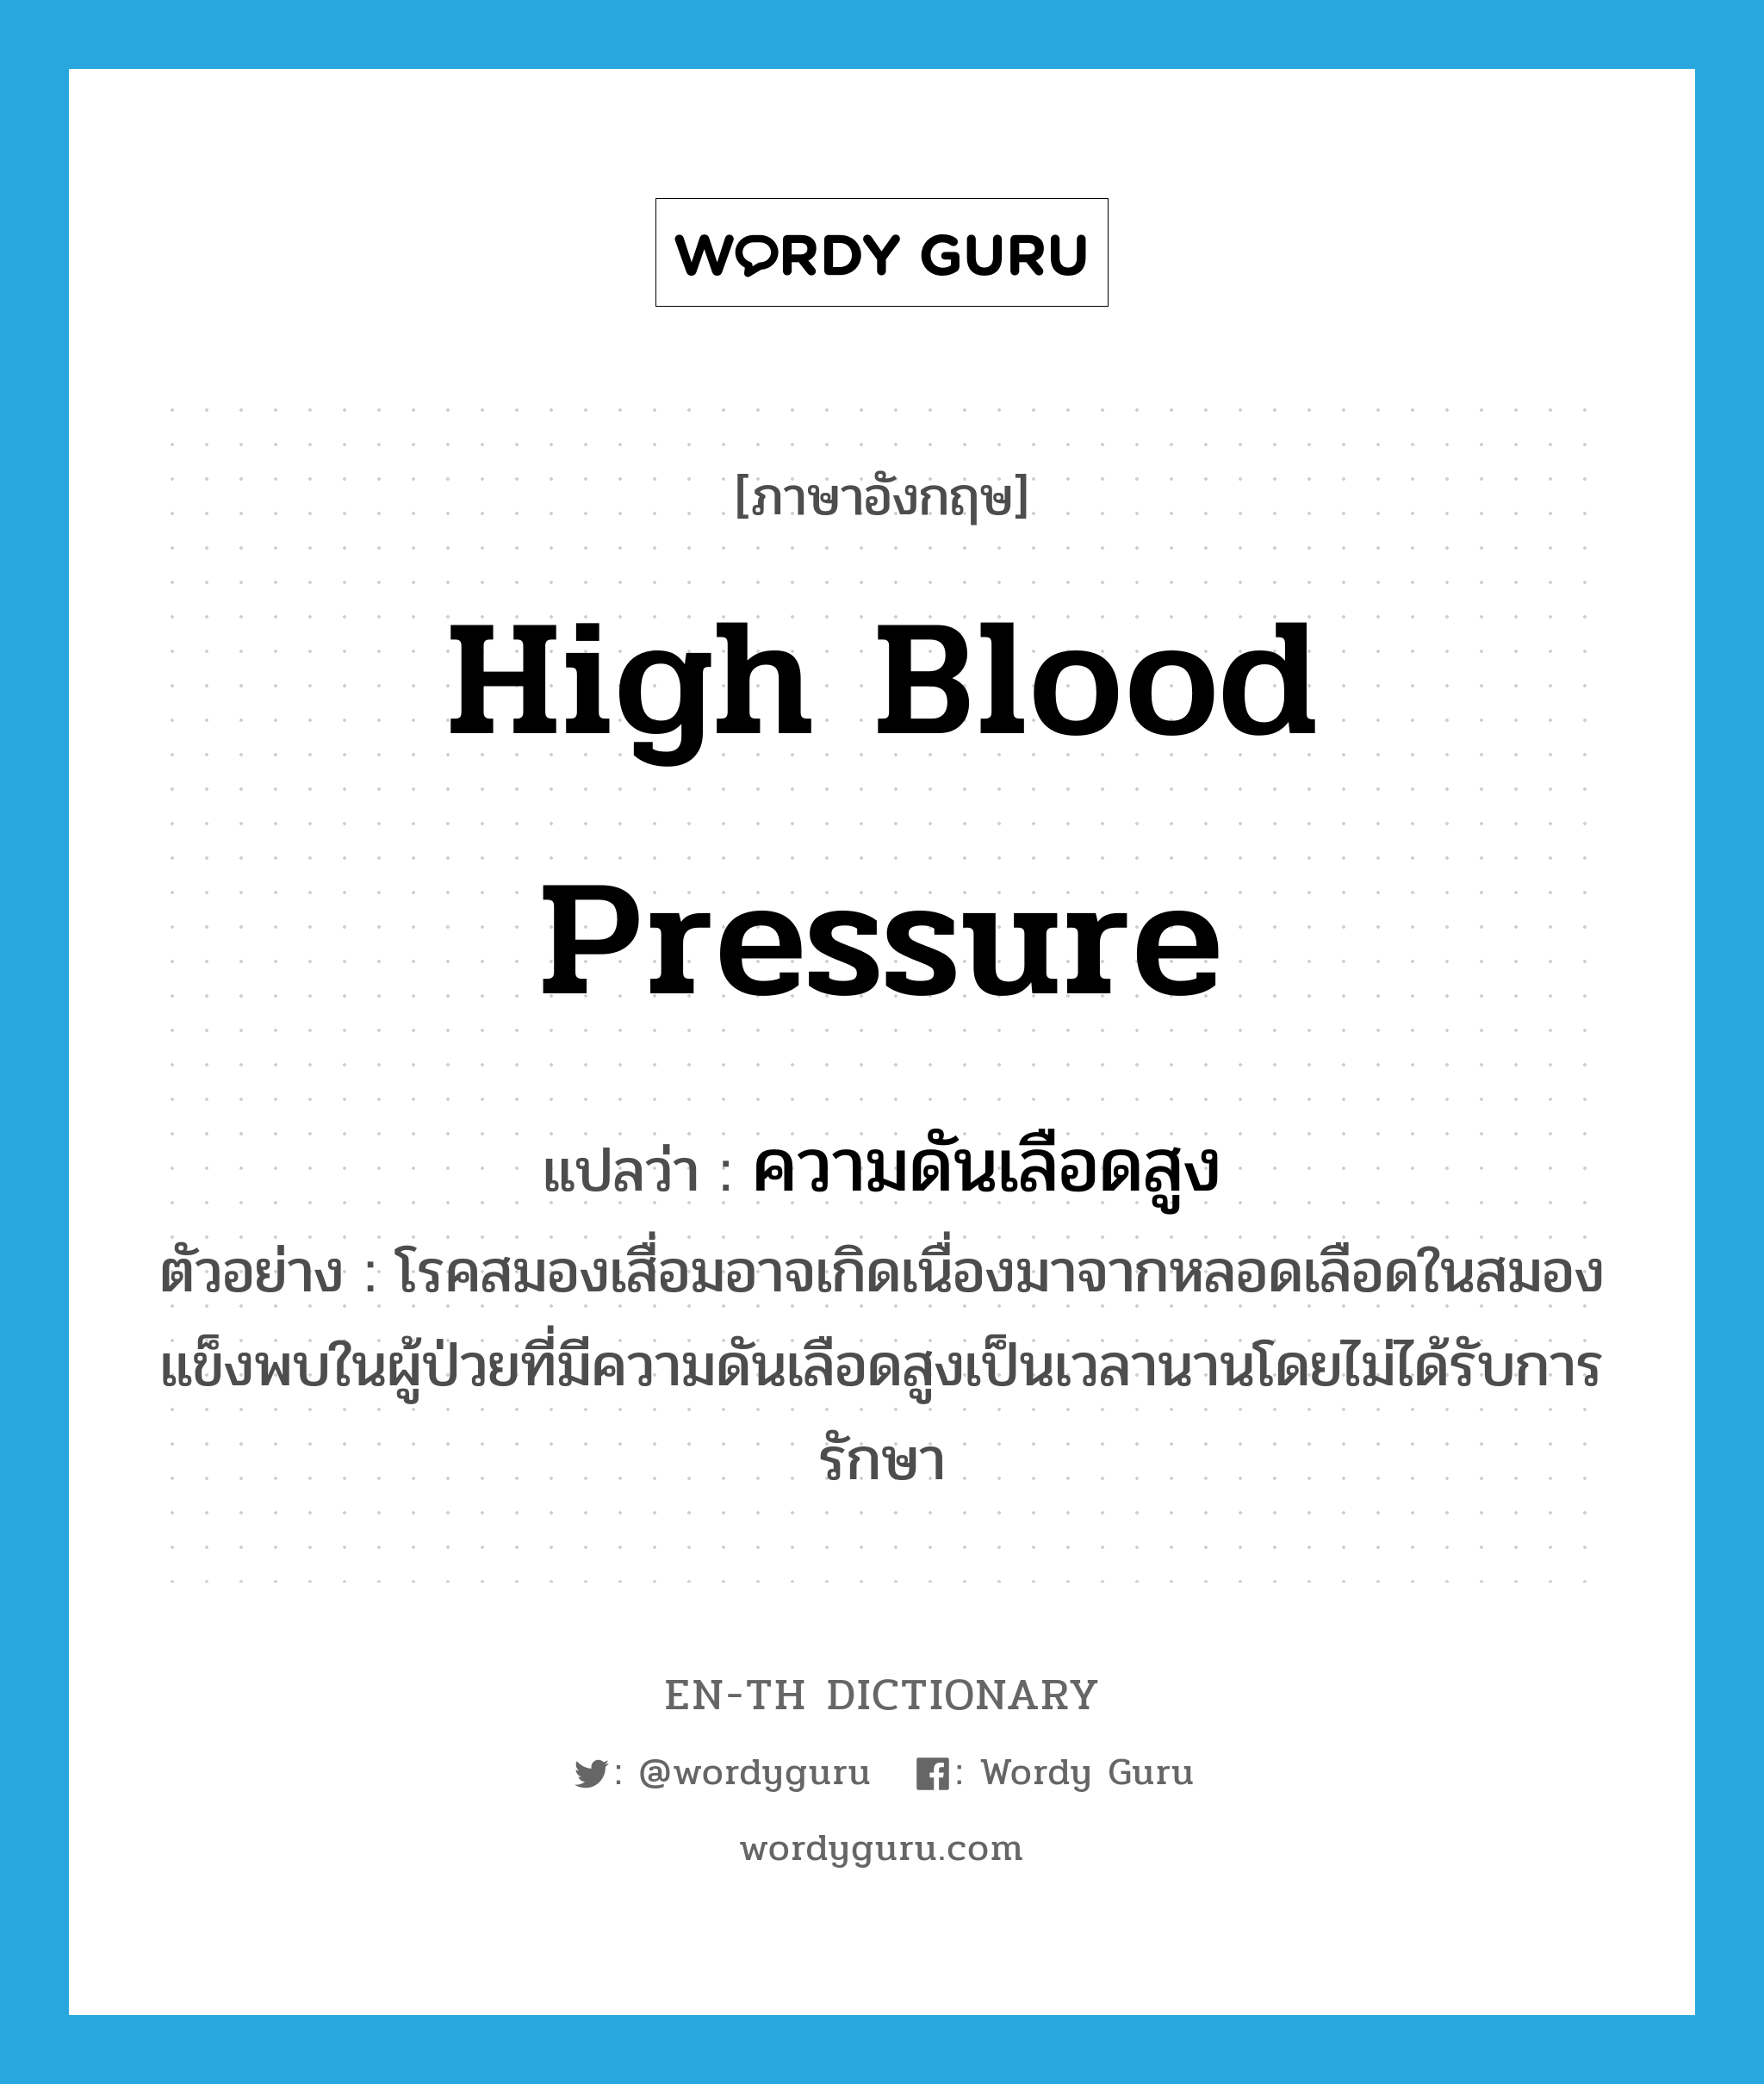 high blood pressure แปลว่า?, คำศัพท์ภาษาอังกฤษ high blood pressure แปลว่า ความดันเลือดสูง ประเภท N ตัวอย่าง โรคสมองเสื่อมอาจเกิดเนื่องมาจากหลอดเลือดในสมองแข็งพบในผู้ป่วยที่มีความดันเลือดสูงเป็นเวลานานโดยไม่ได้รับการรักษา หมวด N